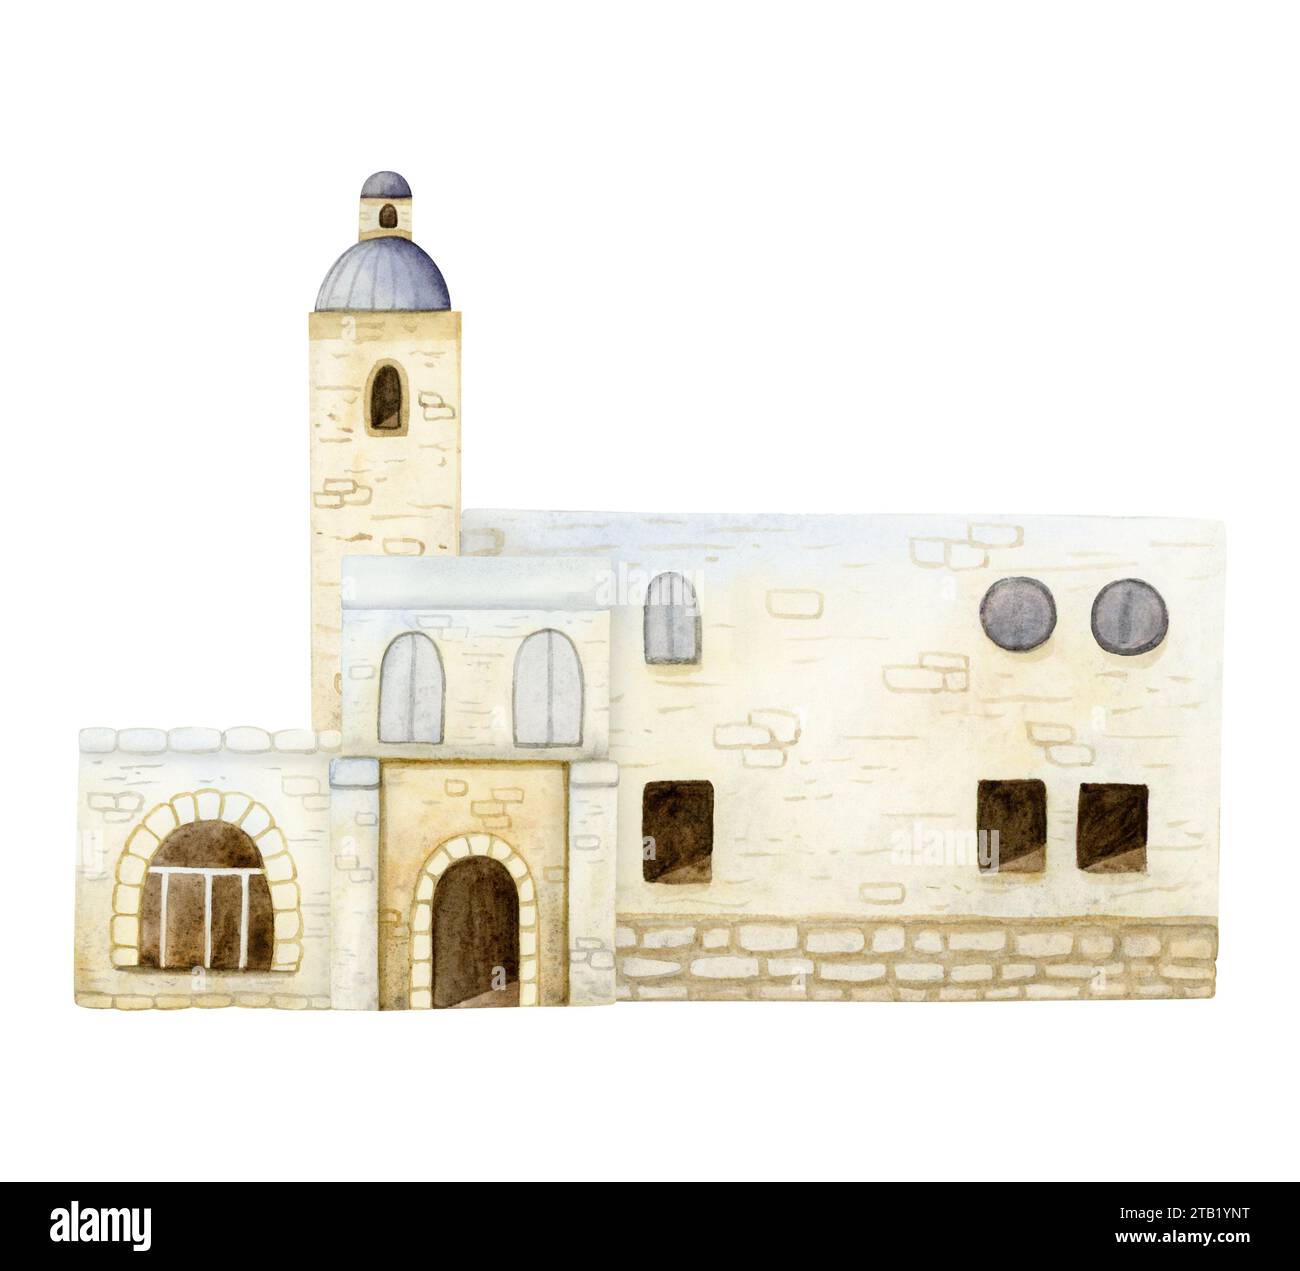 Vieilles maisons de ville de Jérusalem ou illustration d'aquarelle de pays arabe antique. Architecture de l'Europe méditerranéenne Banque D'Images